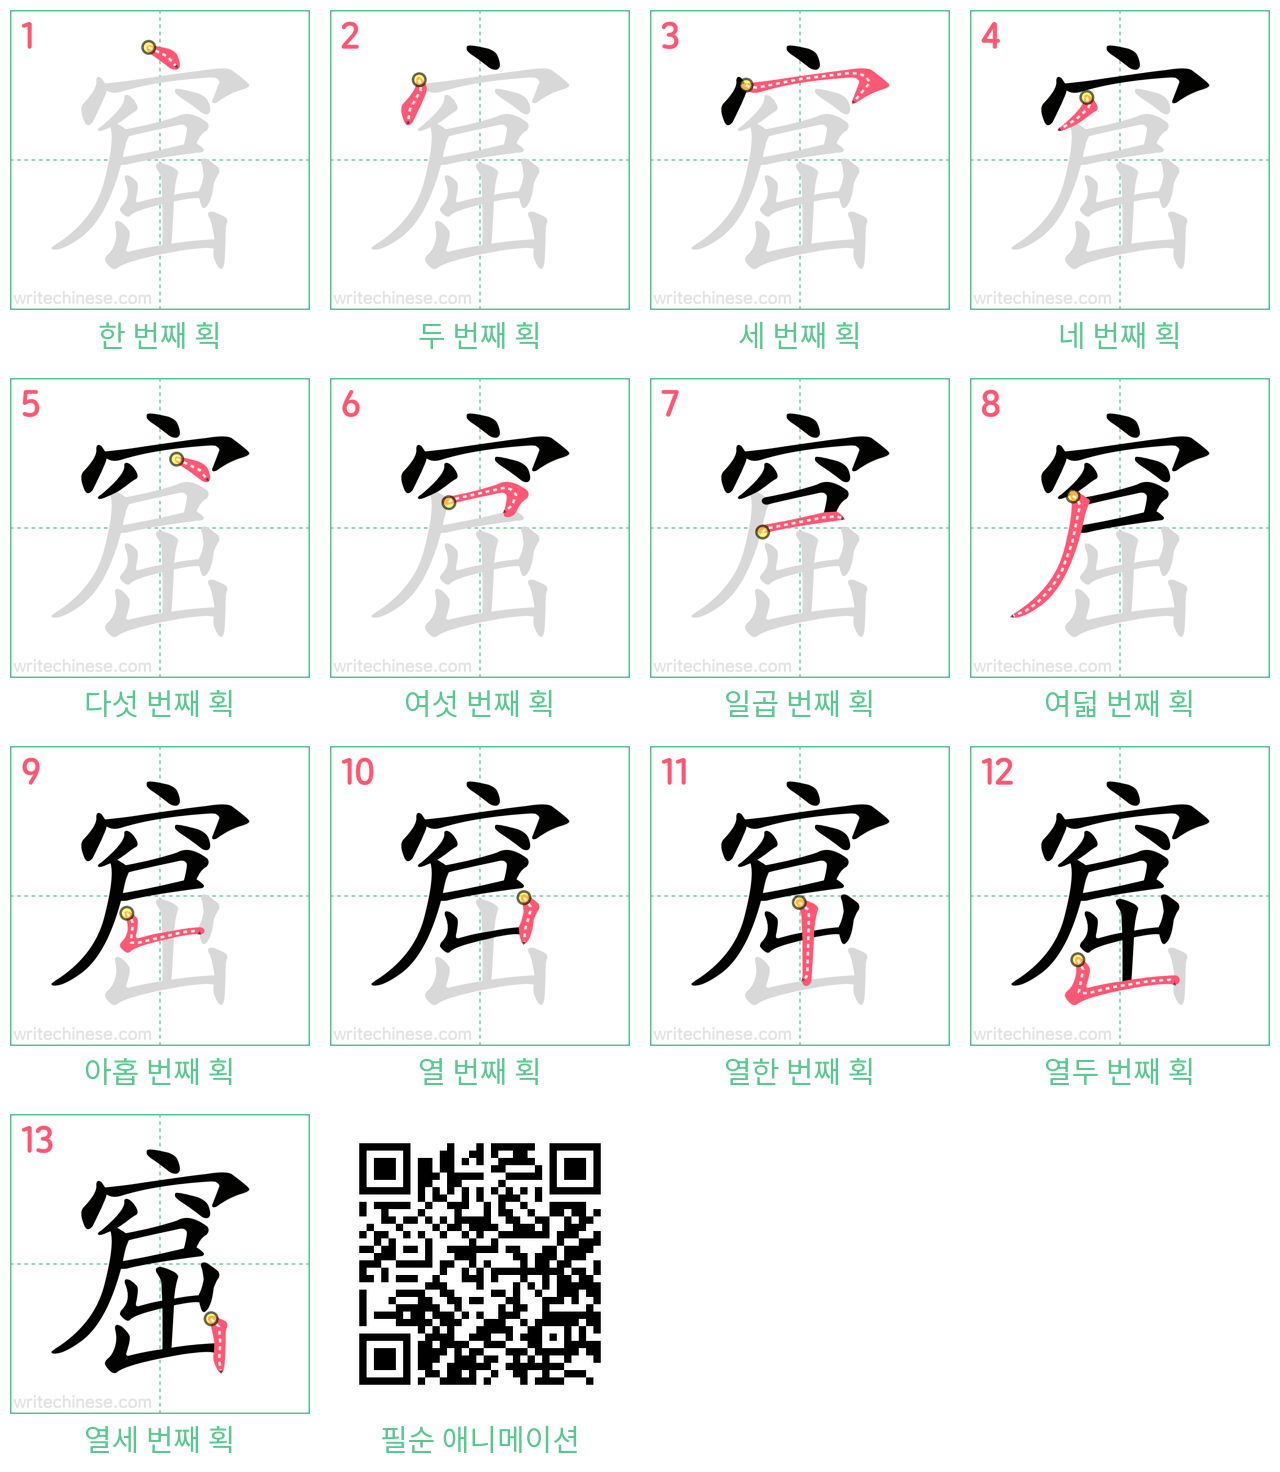 窟 step-by-step stroke order diagrams